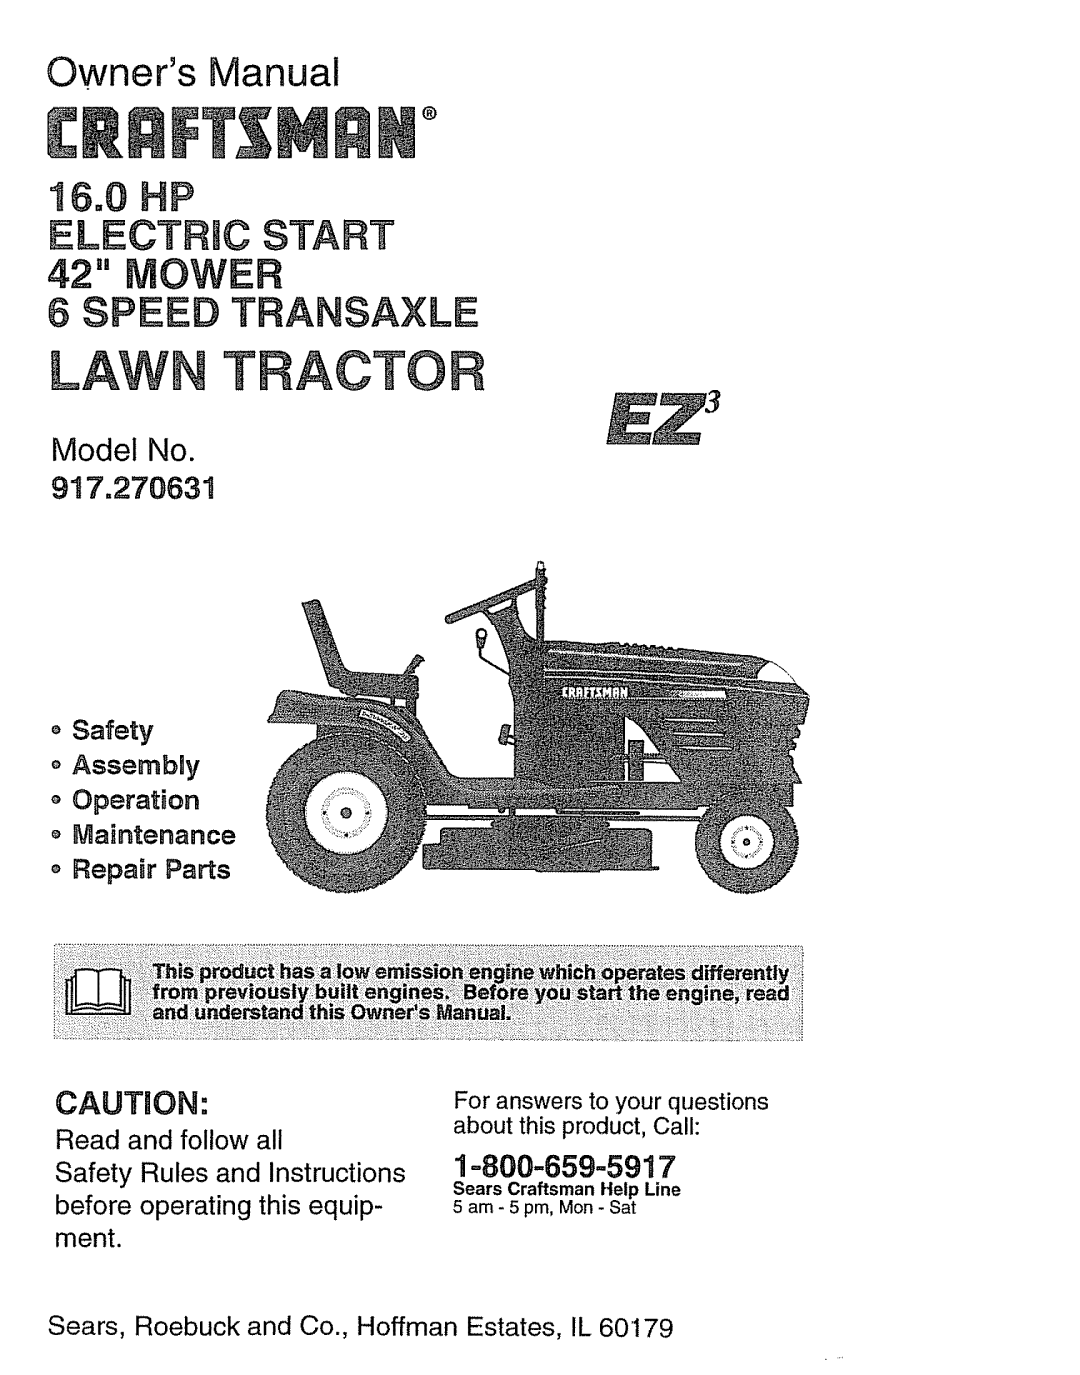 Craftsman 917.270631 owner manual Model No, o Safety o Assembly Operation, oMaintenance o Repair Parts, Lawn 